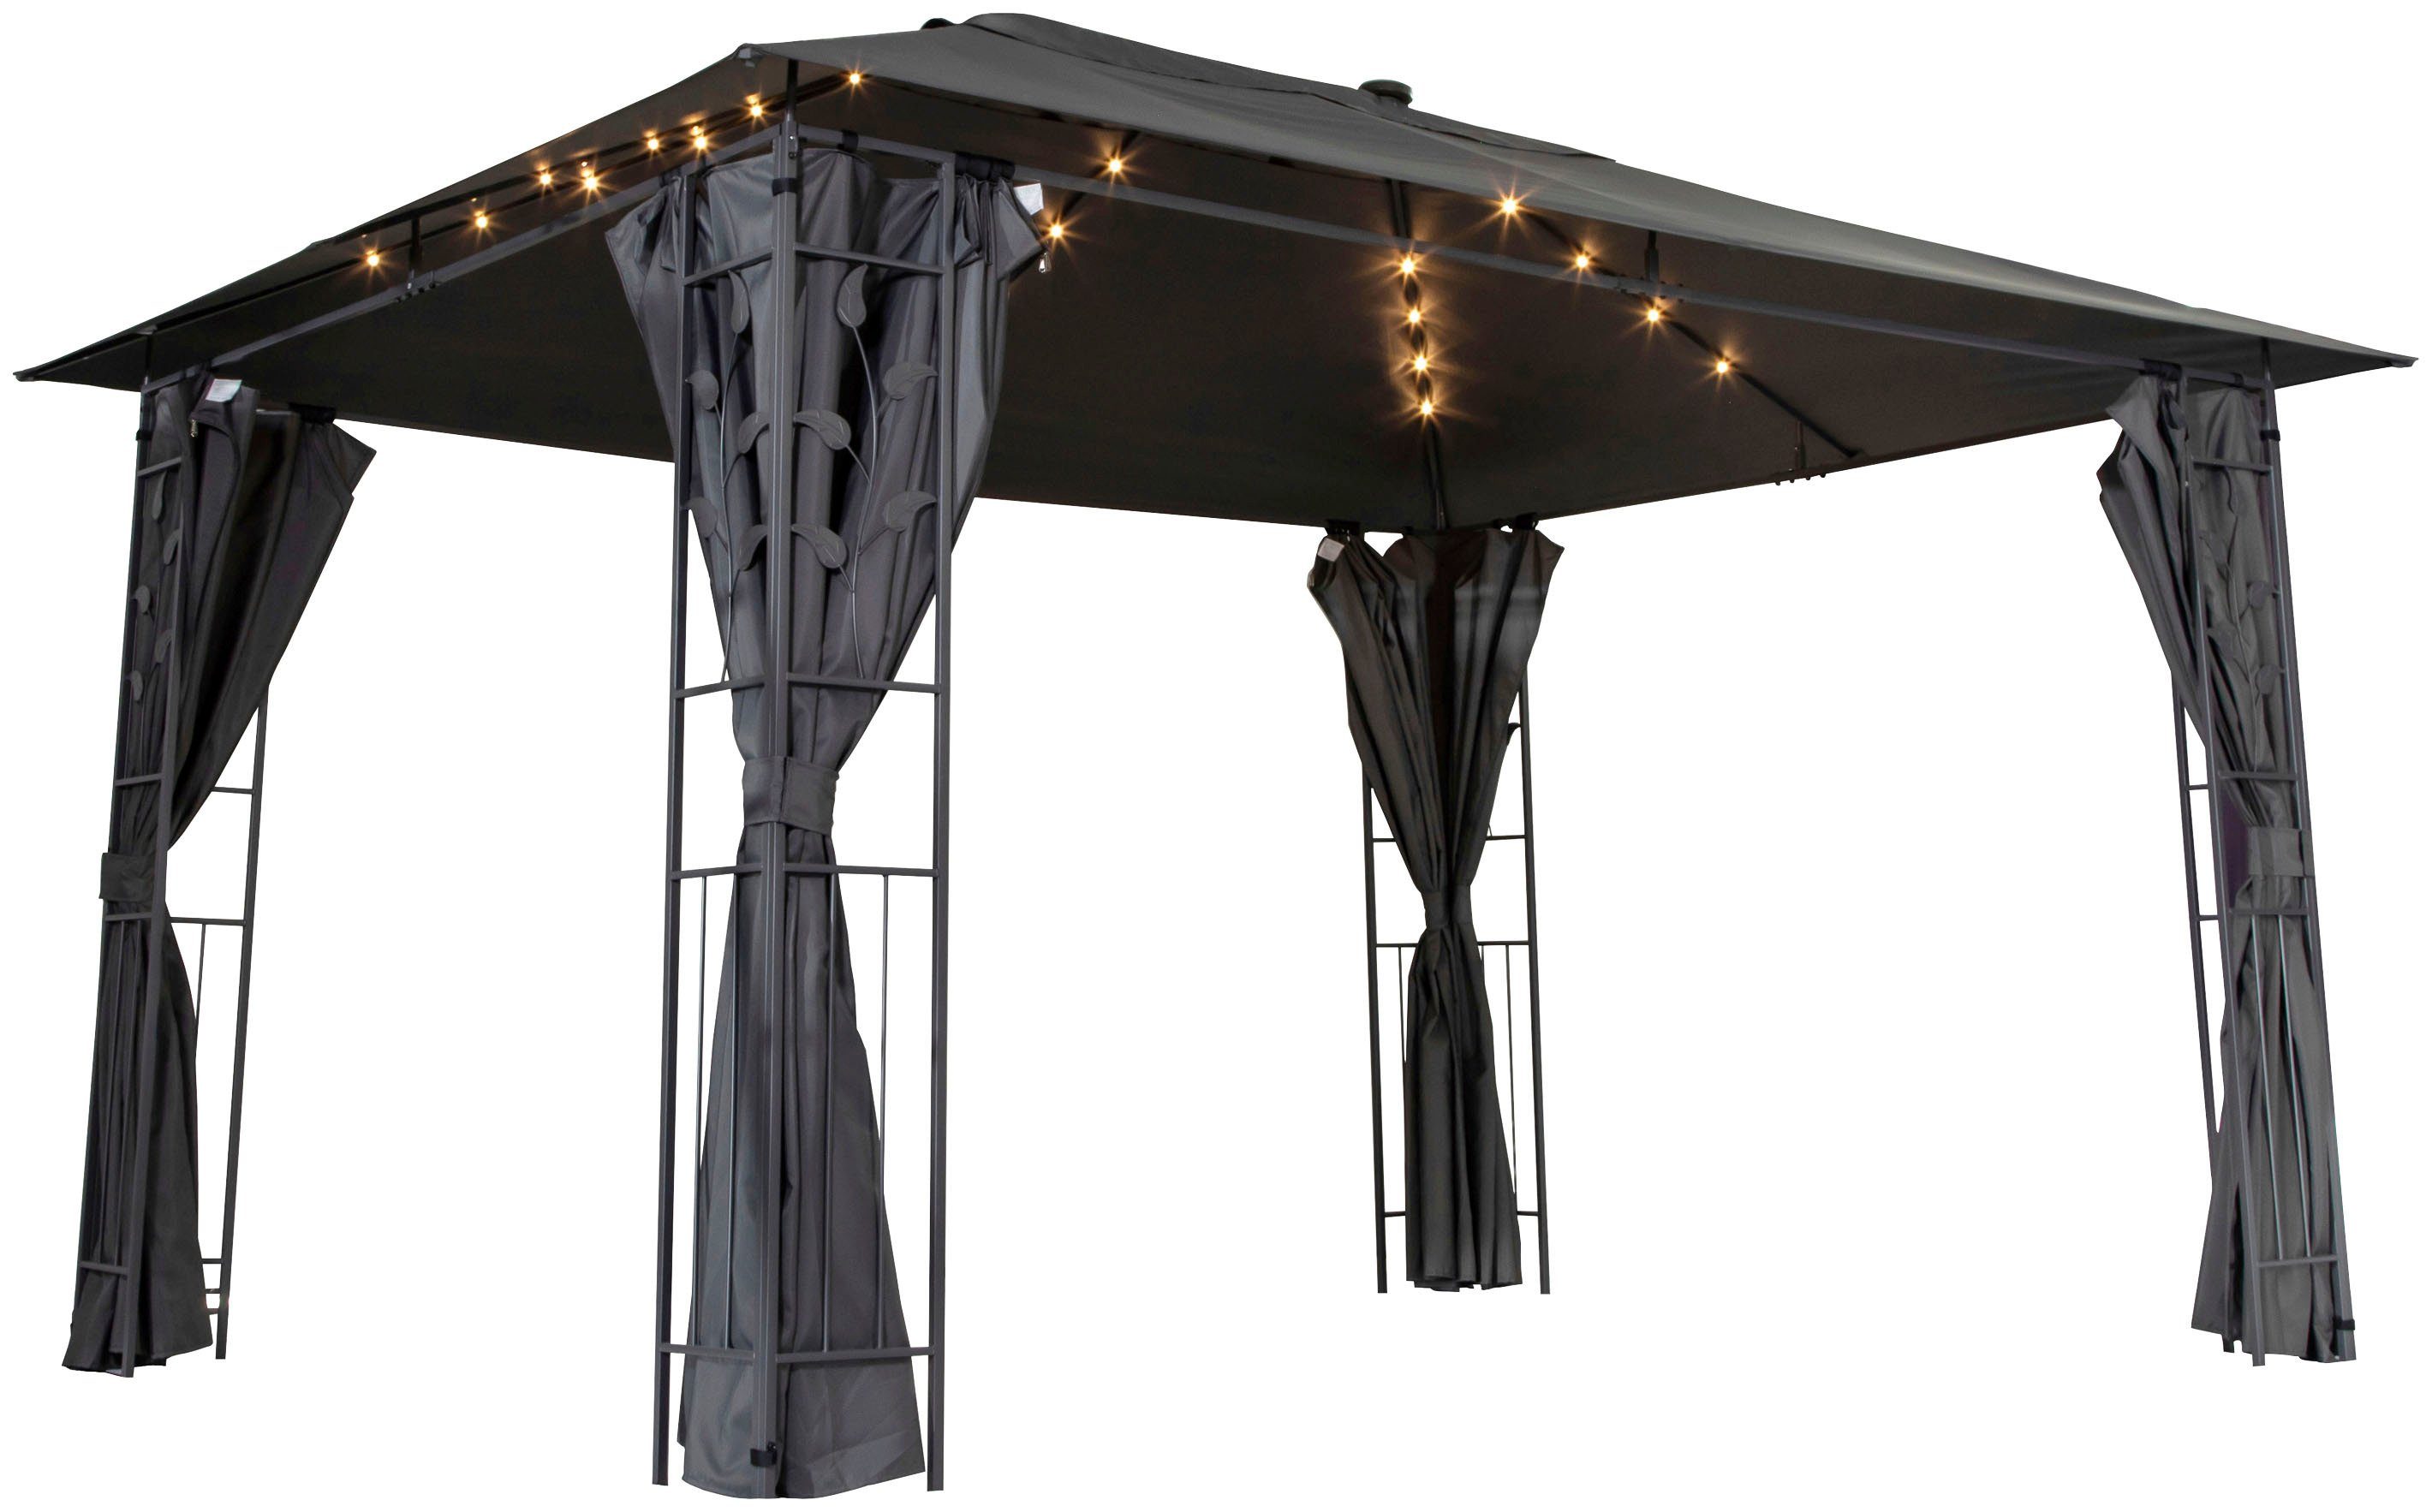 300x400cm, Seitenteilen, Pavillon, 4 Livotion LED-Beleuchtung, mit Blätteroptik, grau in mit